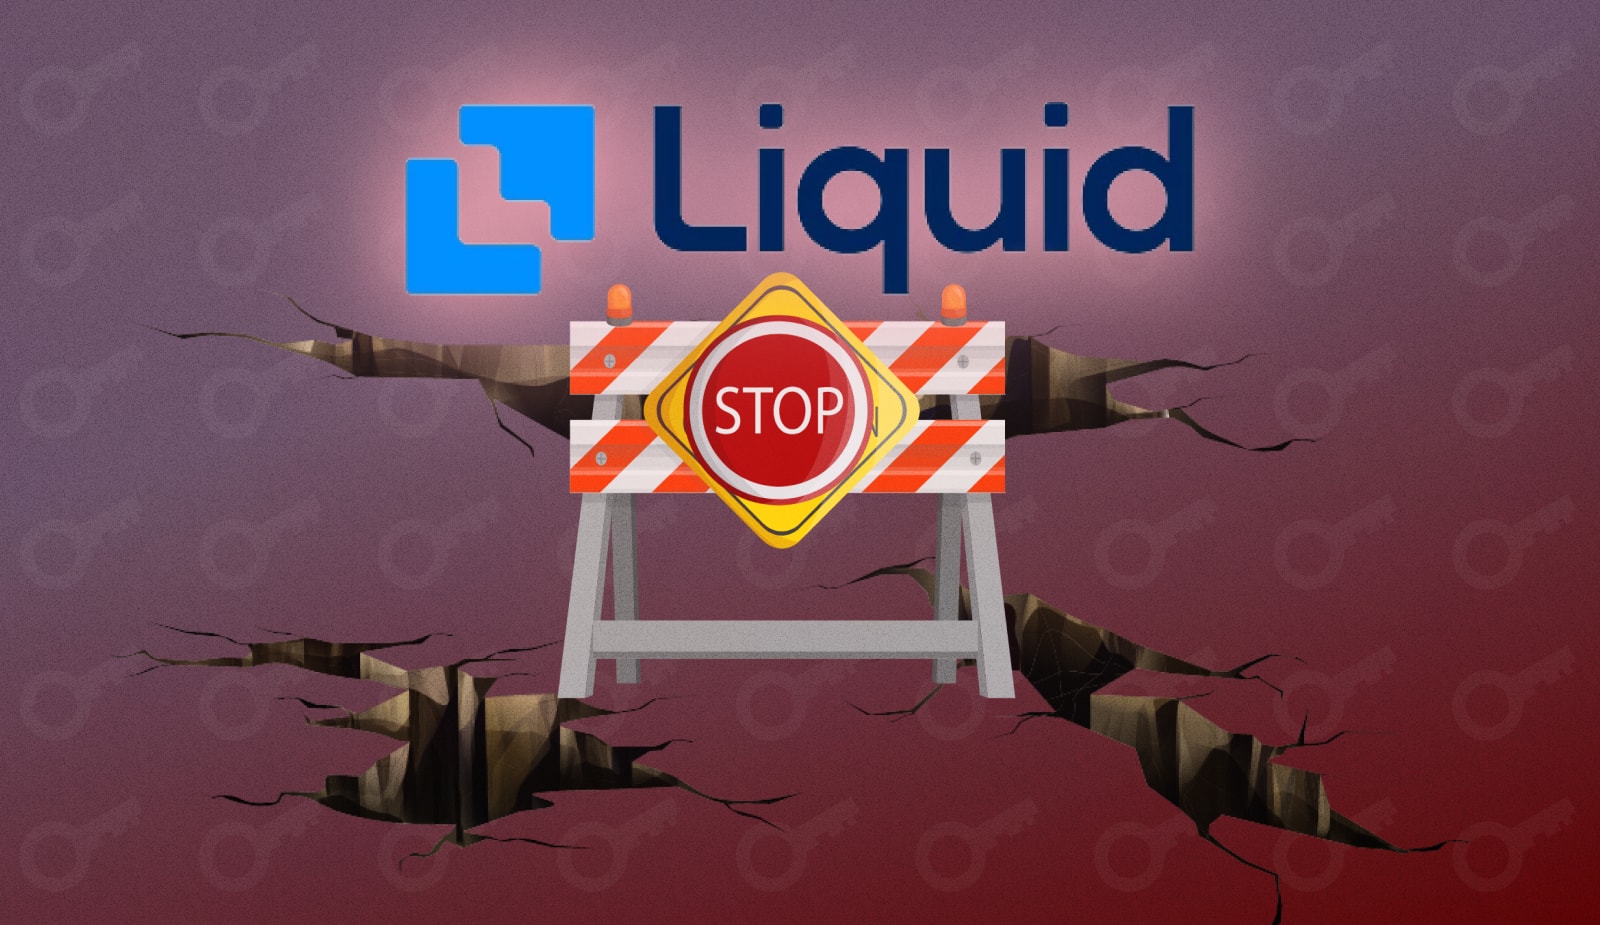 Liquid Exchage припиняє будь-які зняття коштів, включно з фіатними та криптовалютами. Головний колаж новини.